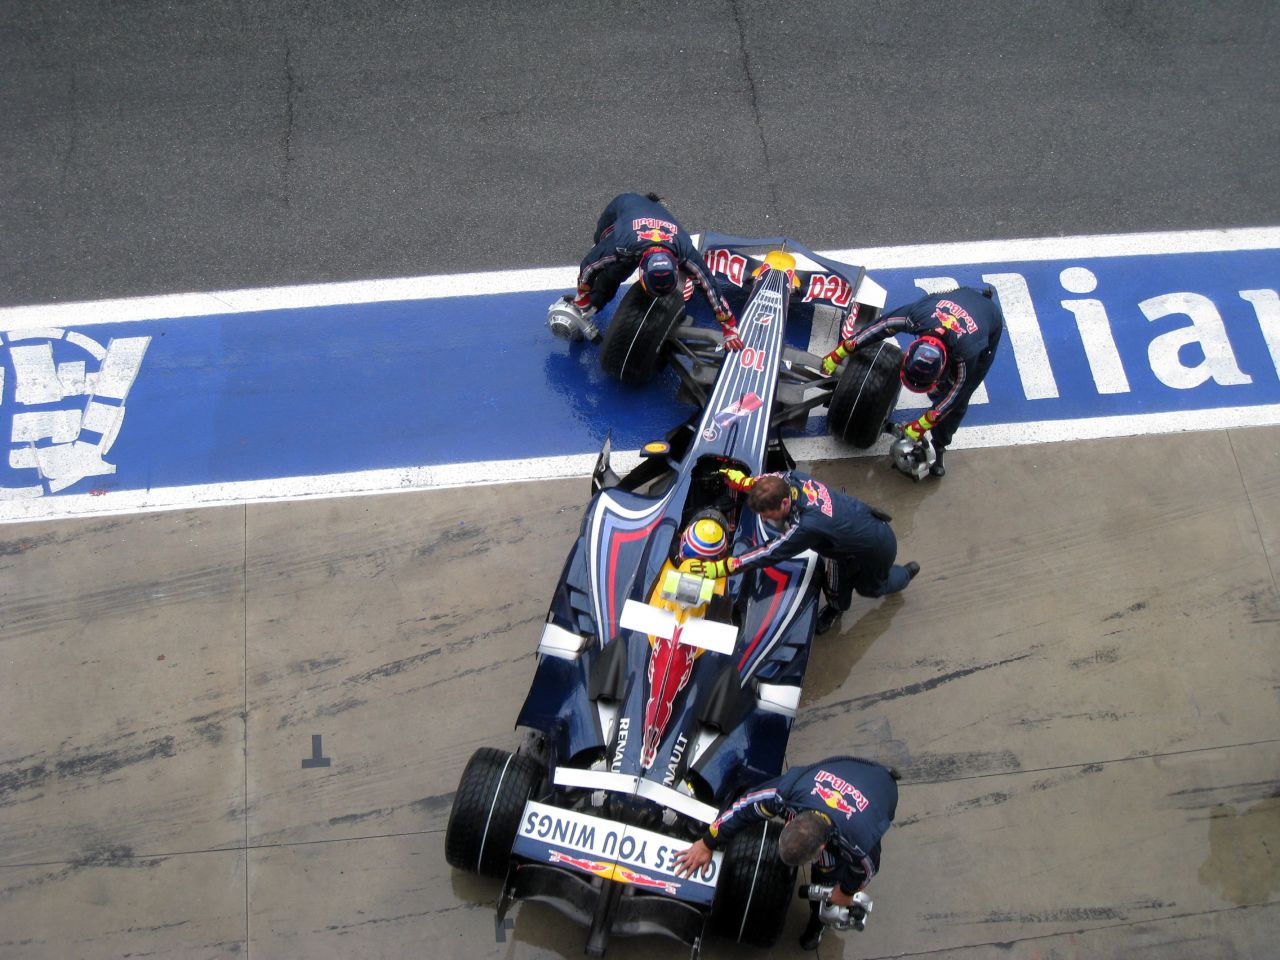 Dossier : Red Bull RB4 Monza 2008.jpg - Wikimedia Commons